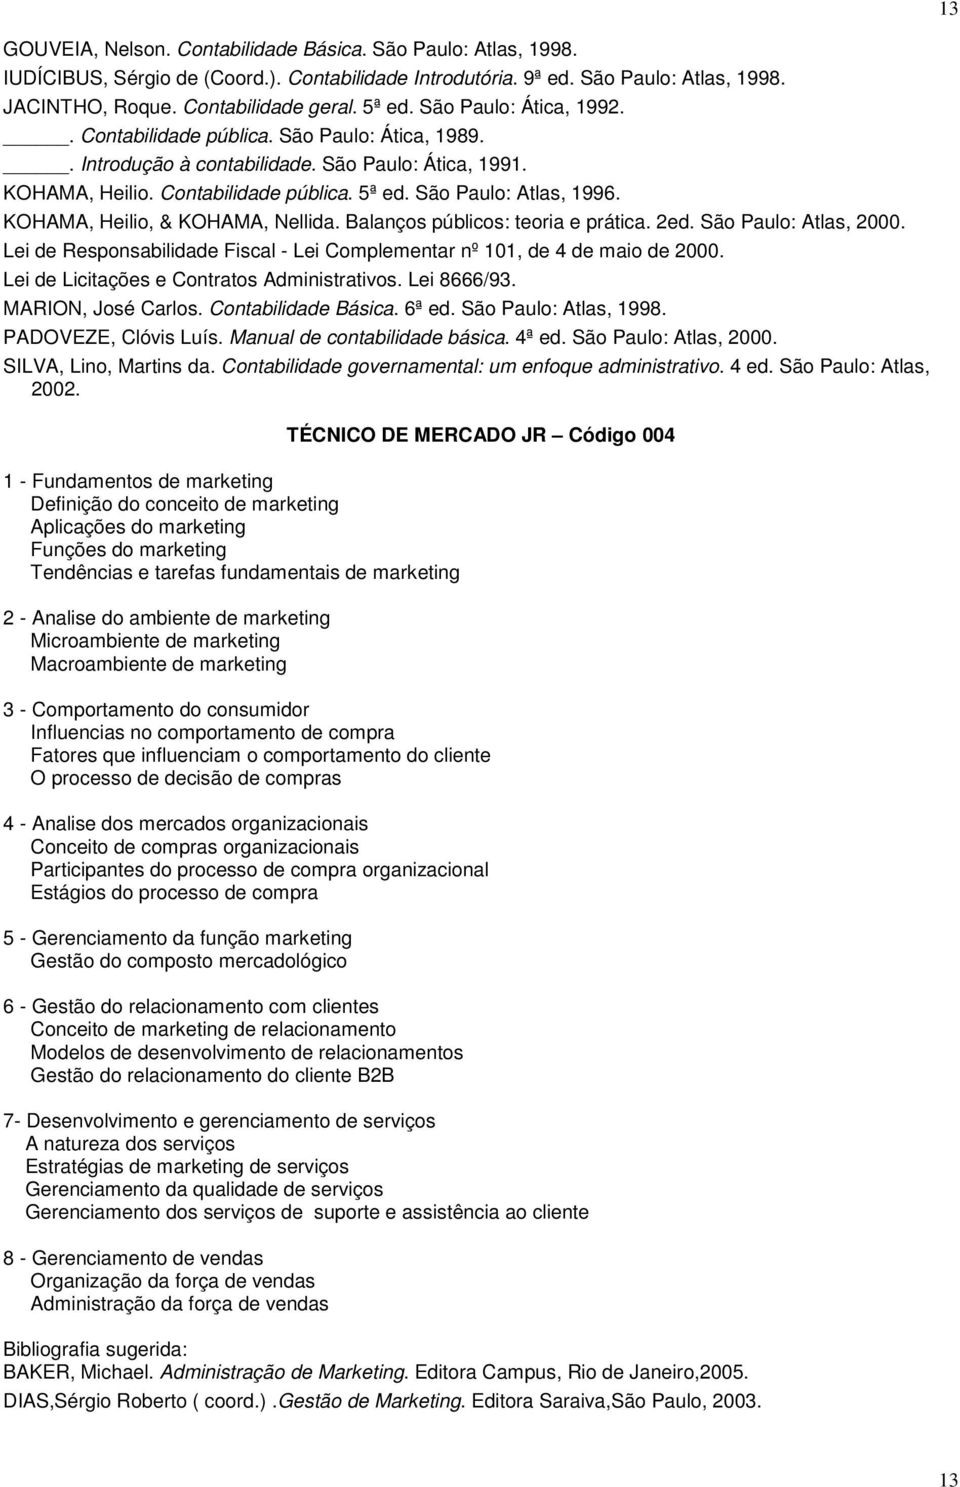 KOHAMA, Heilio, & KOHAMA, Nellida. Balanços públicos: teoria e prática. 2ed. São Paulo: Atlas, 2000. Lei de Responsabilidade Fiscal - Lei Complementar nº 101, de 4 de maio de 2000.